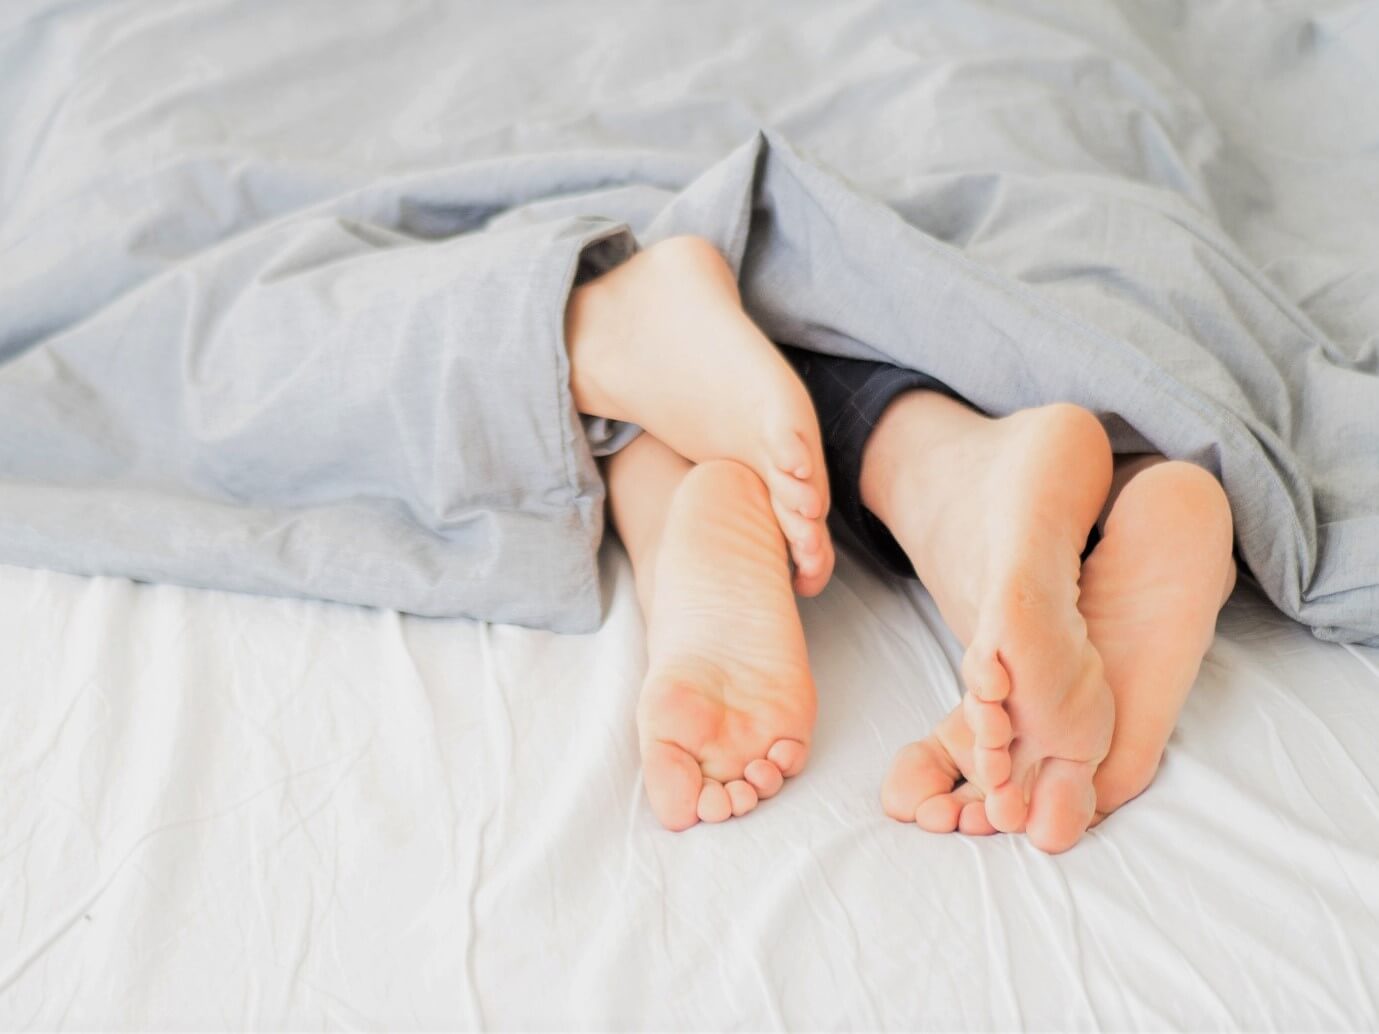 Para sincronizar horas de sueño: un estudio revela que dormir en pareja es beneficioso para la salud